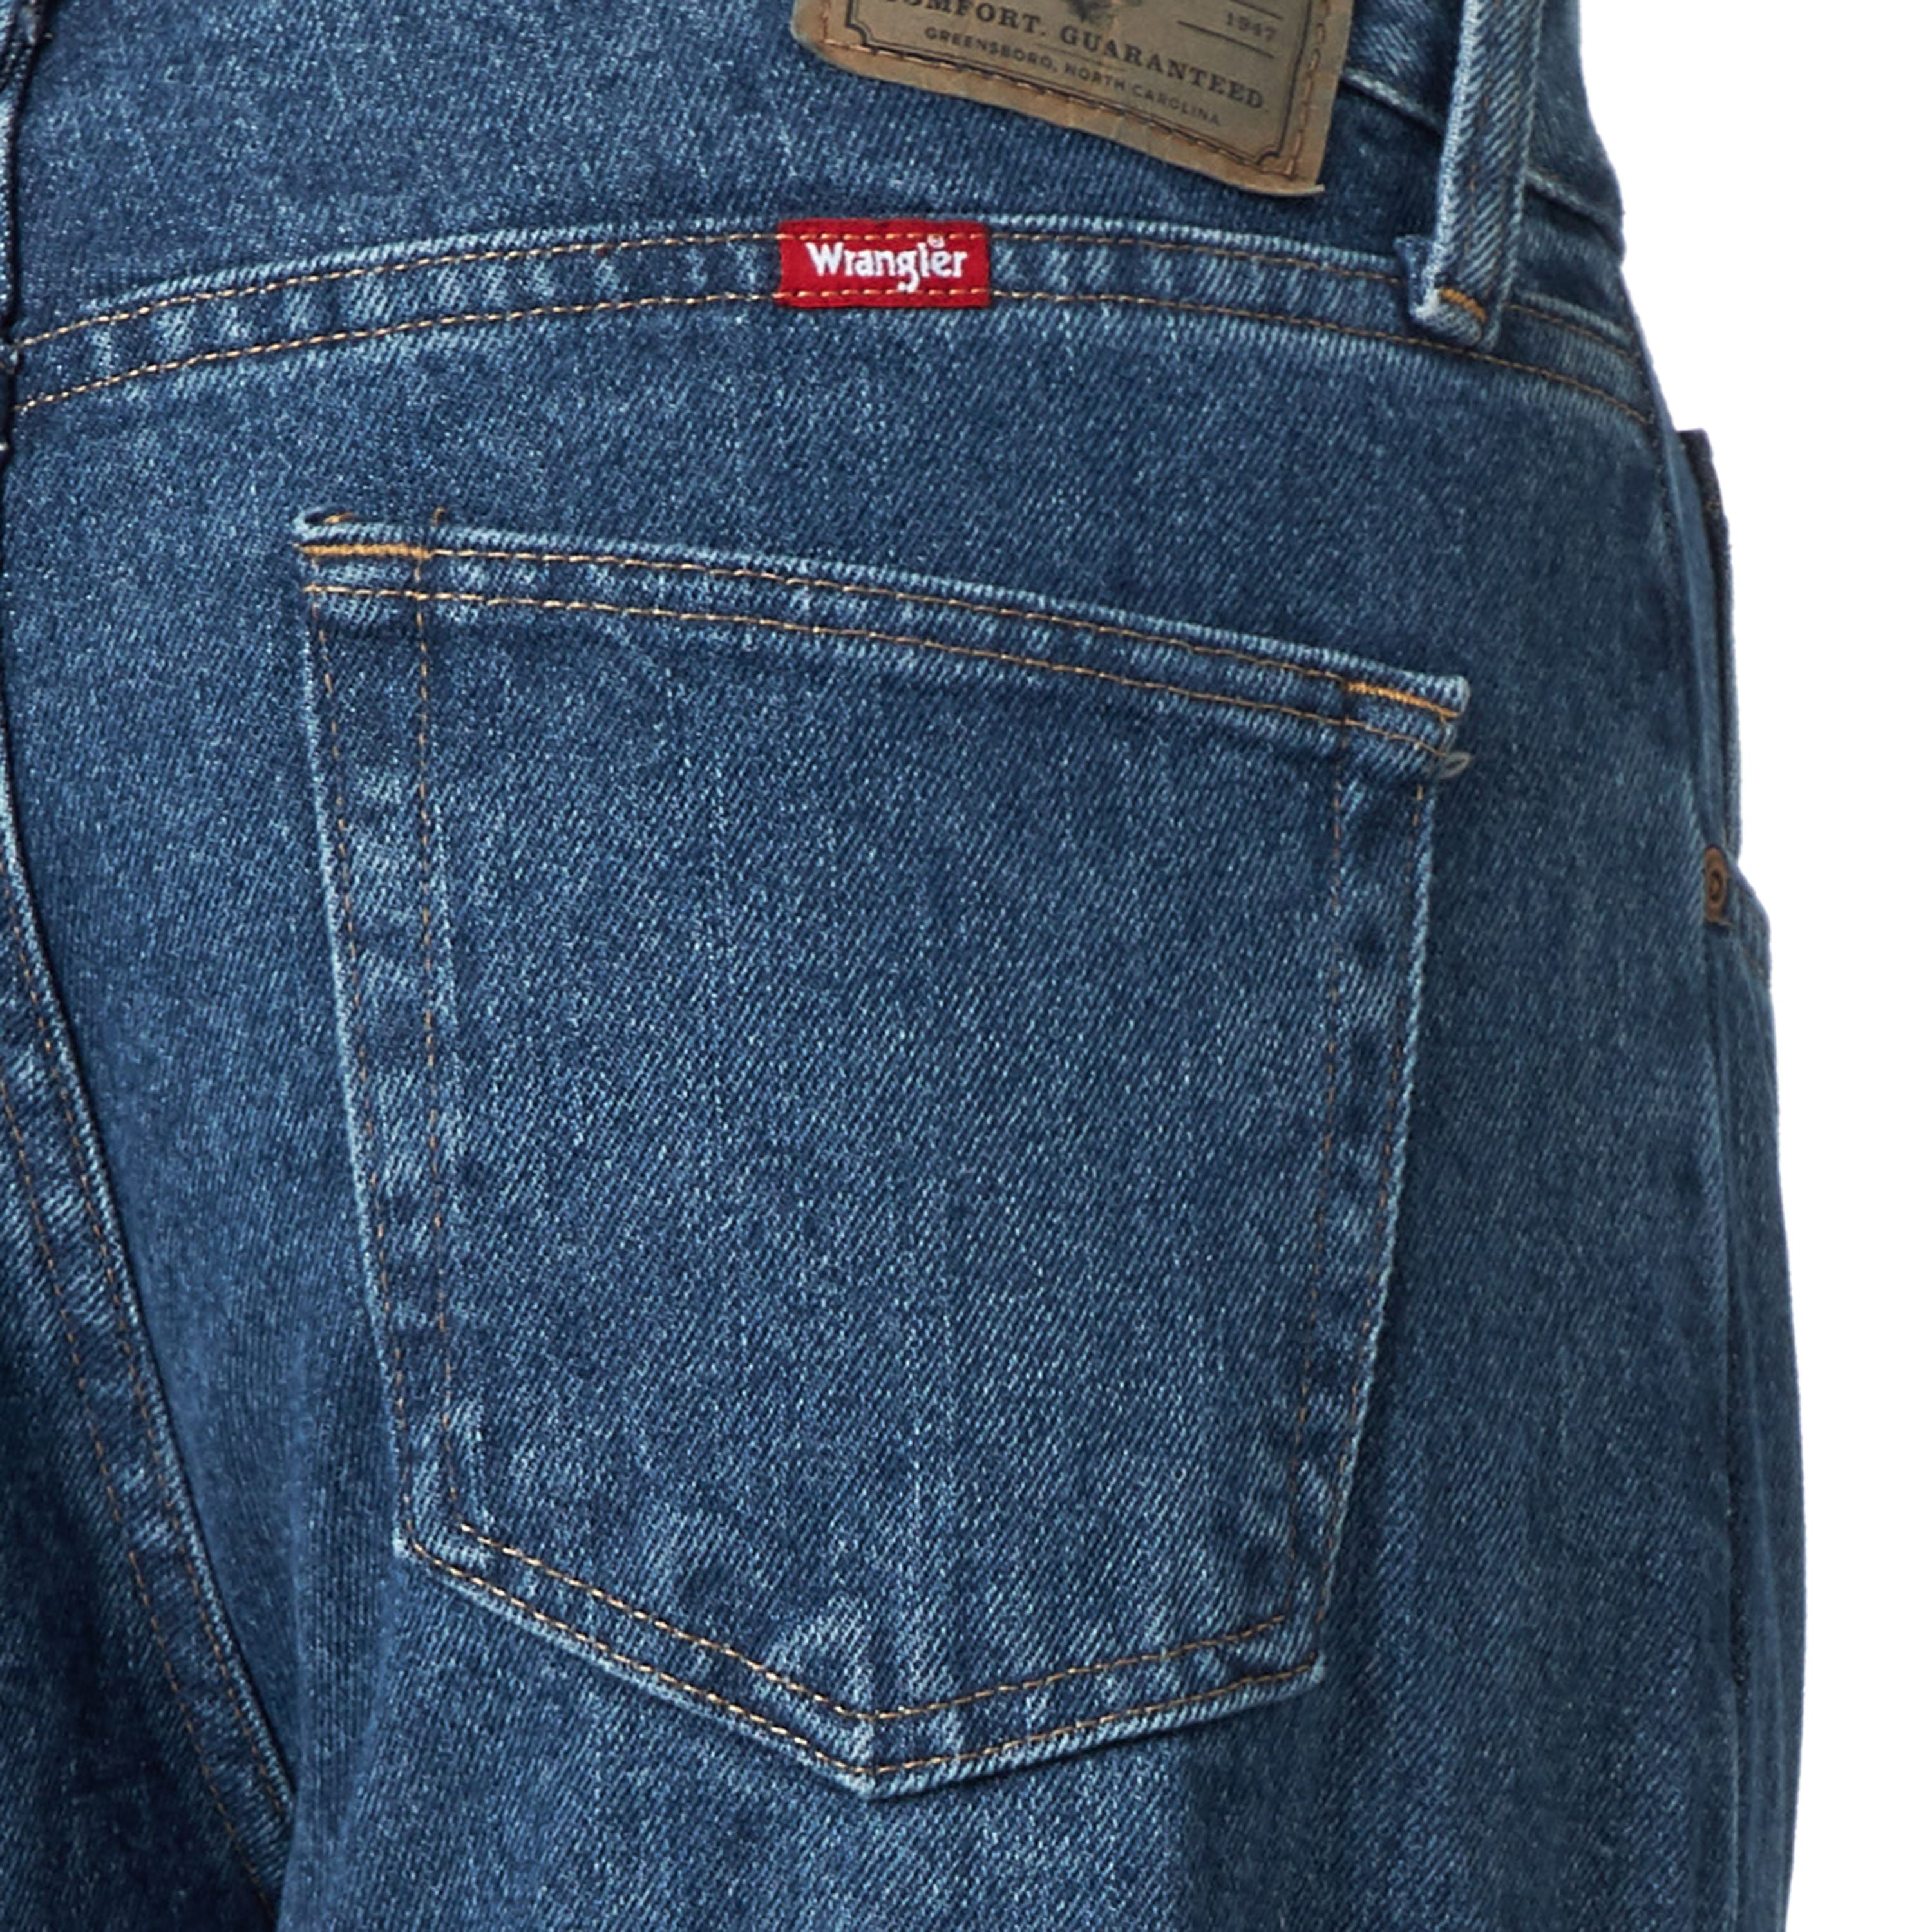 walmart wrangler blue jeans